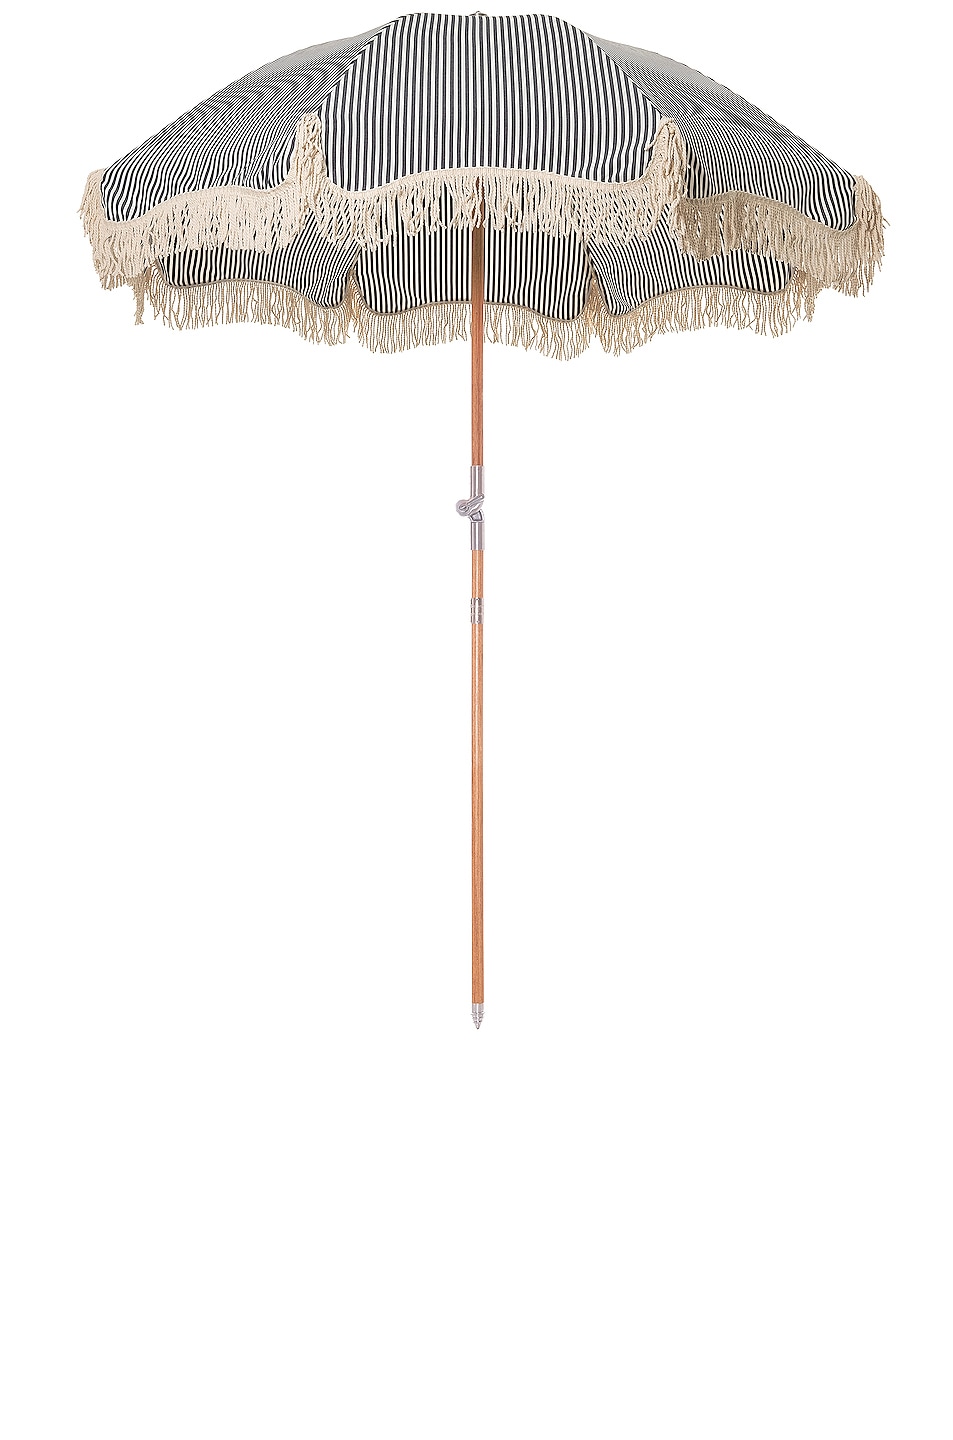 Image 1 of business & pleasure co. Premium Umbrella in Laurens Navy Stripe